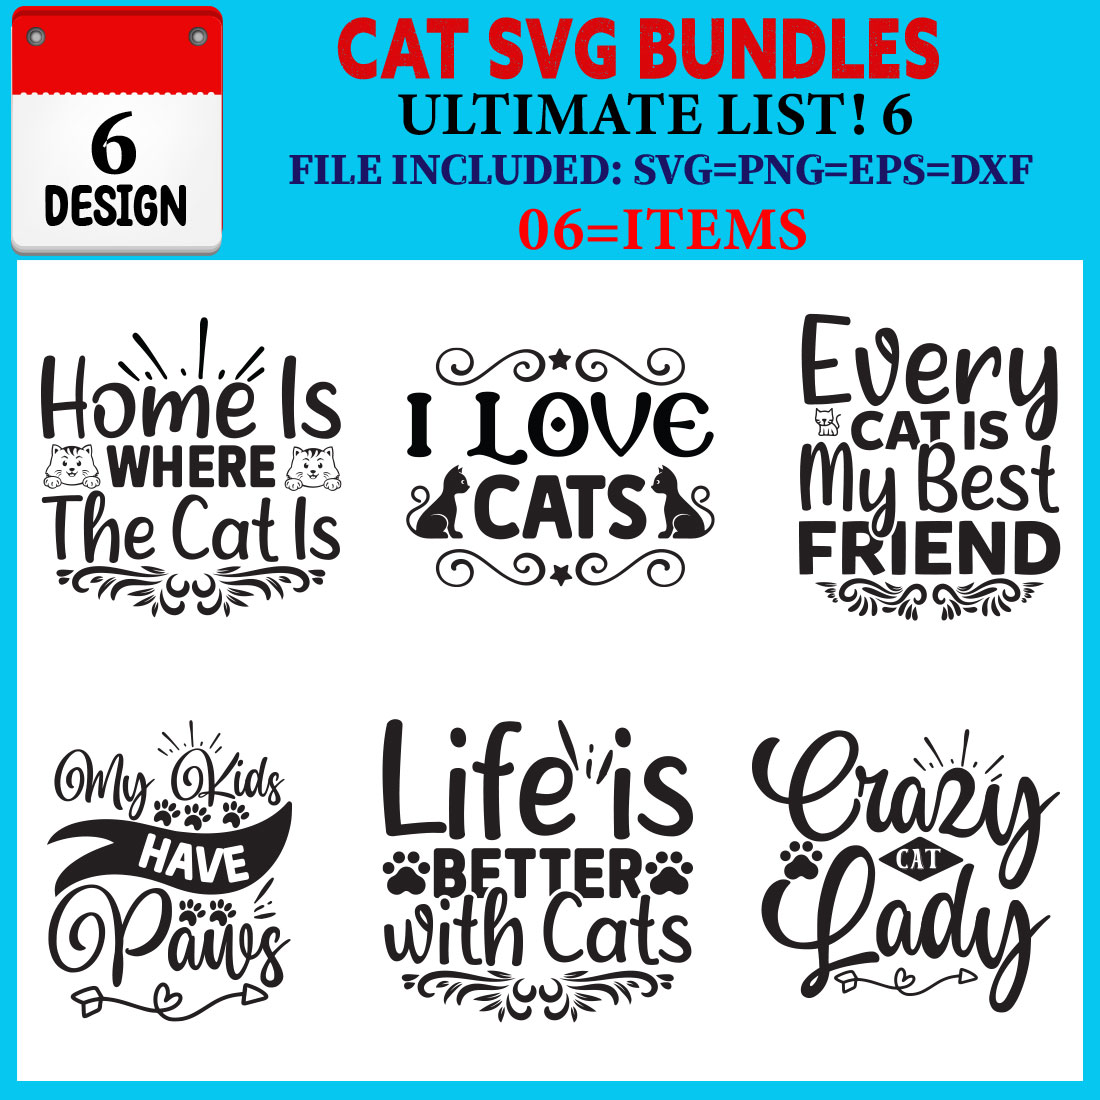 Cat T-shirt Design Bundle Vol-06 cover image.